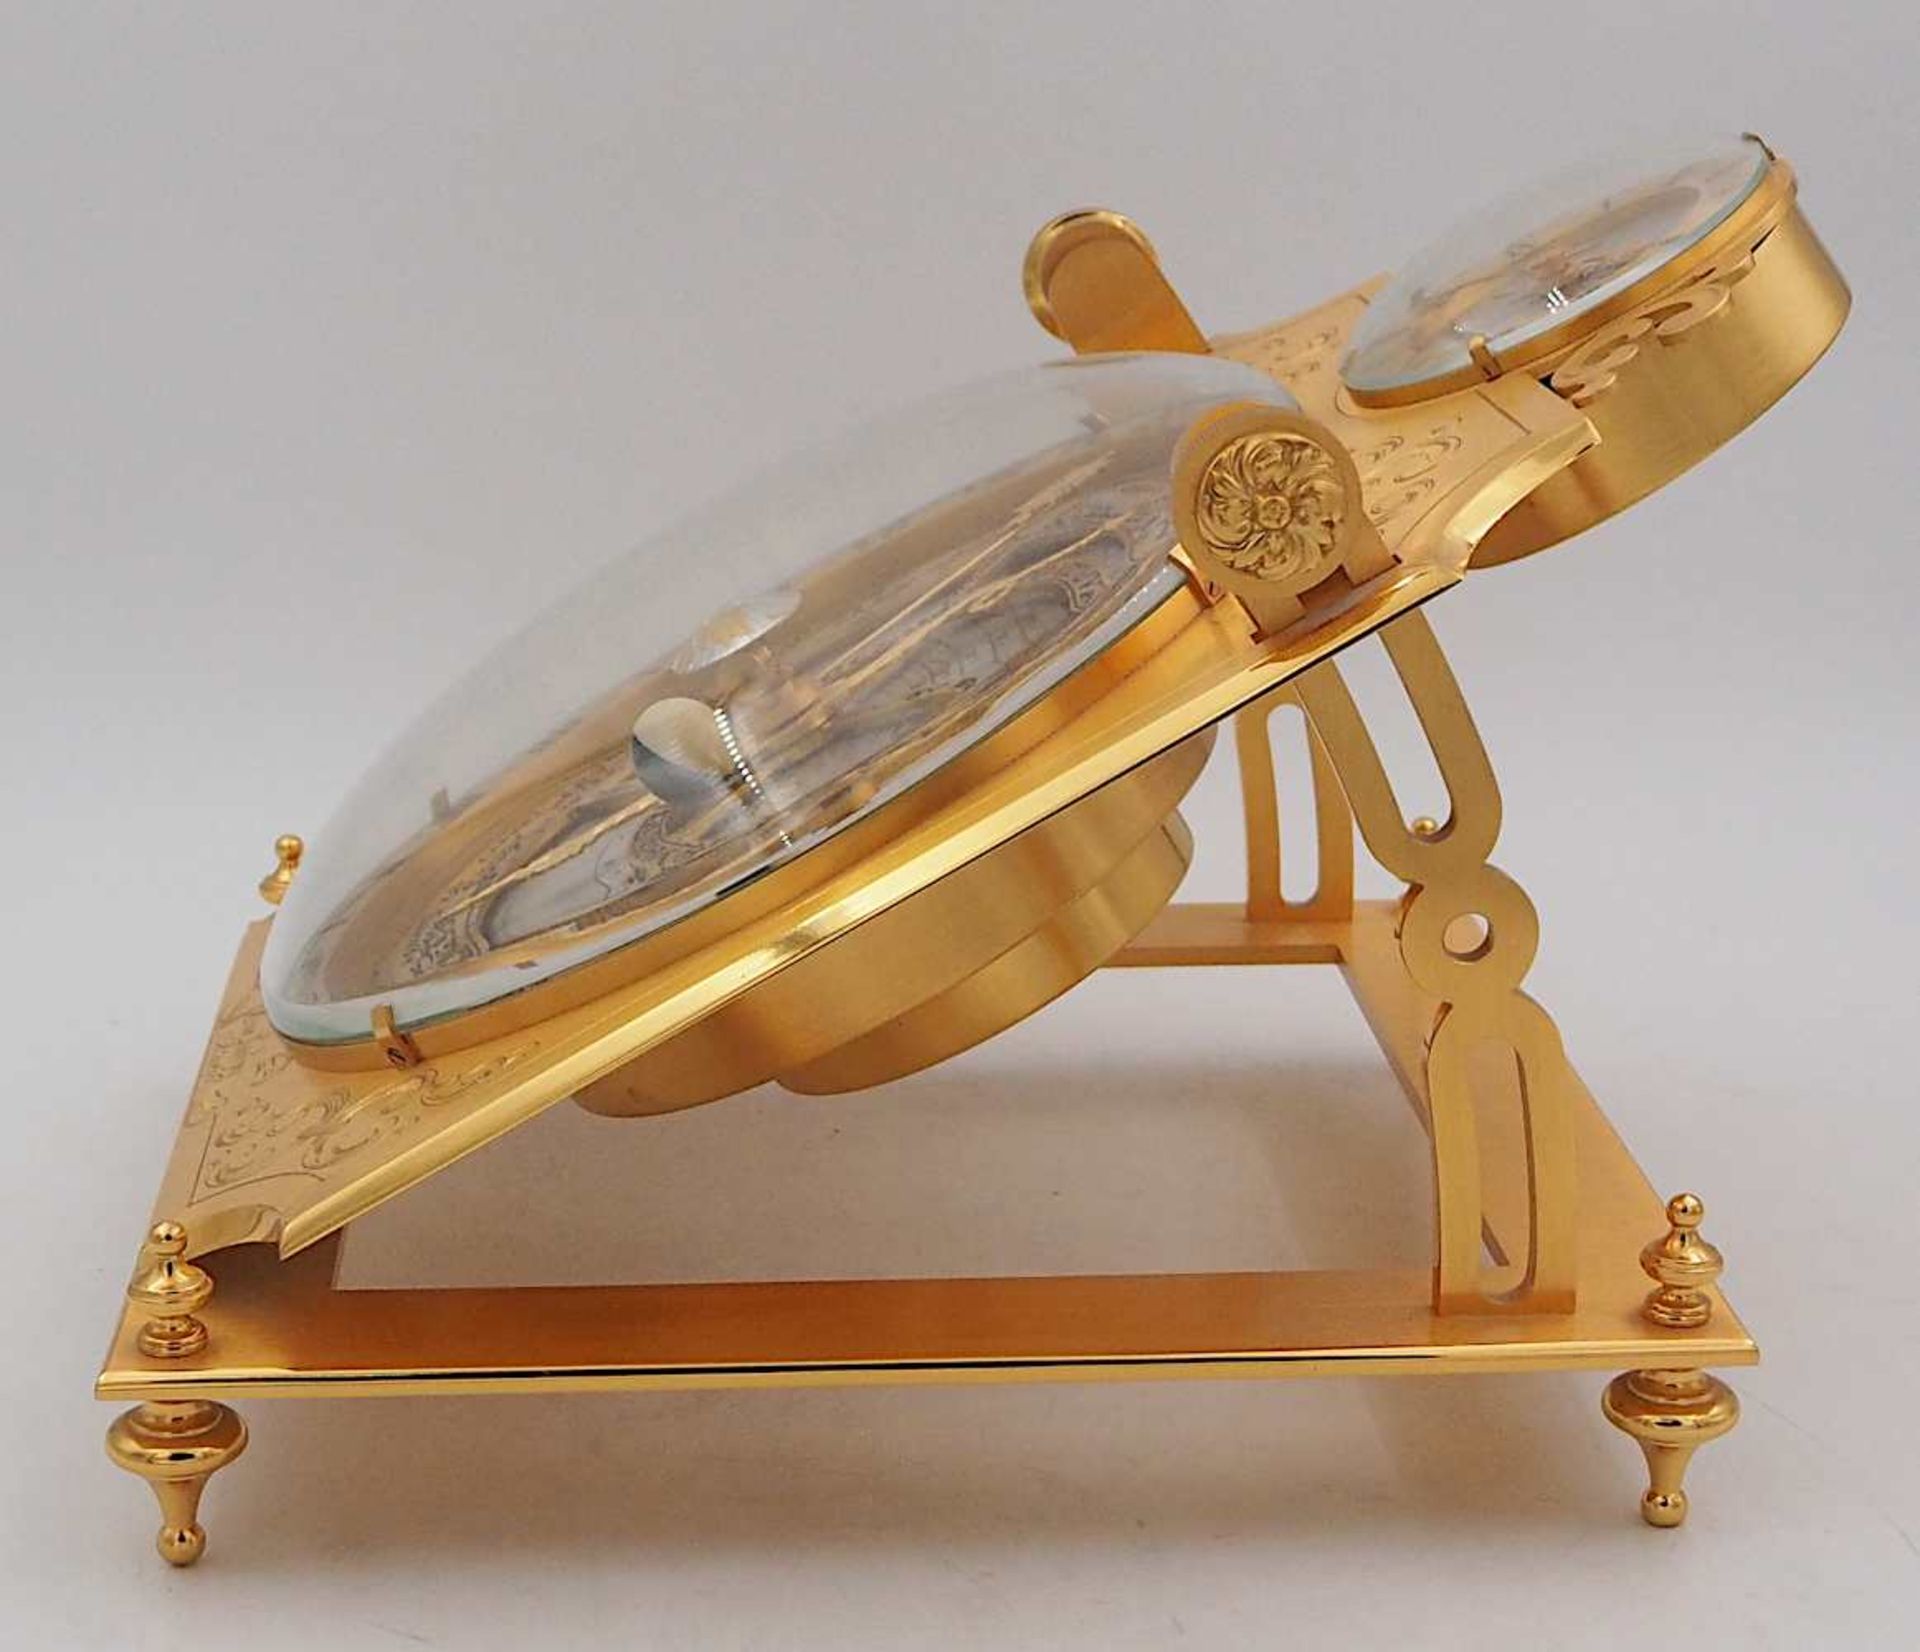 1 Tischuhr HOUR LAVIGNE à Paris, 20. Jh. Messing/Bronze, Uhrwerk über großem Astrol - Bild 2 aus 3